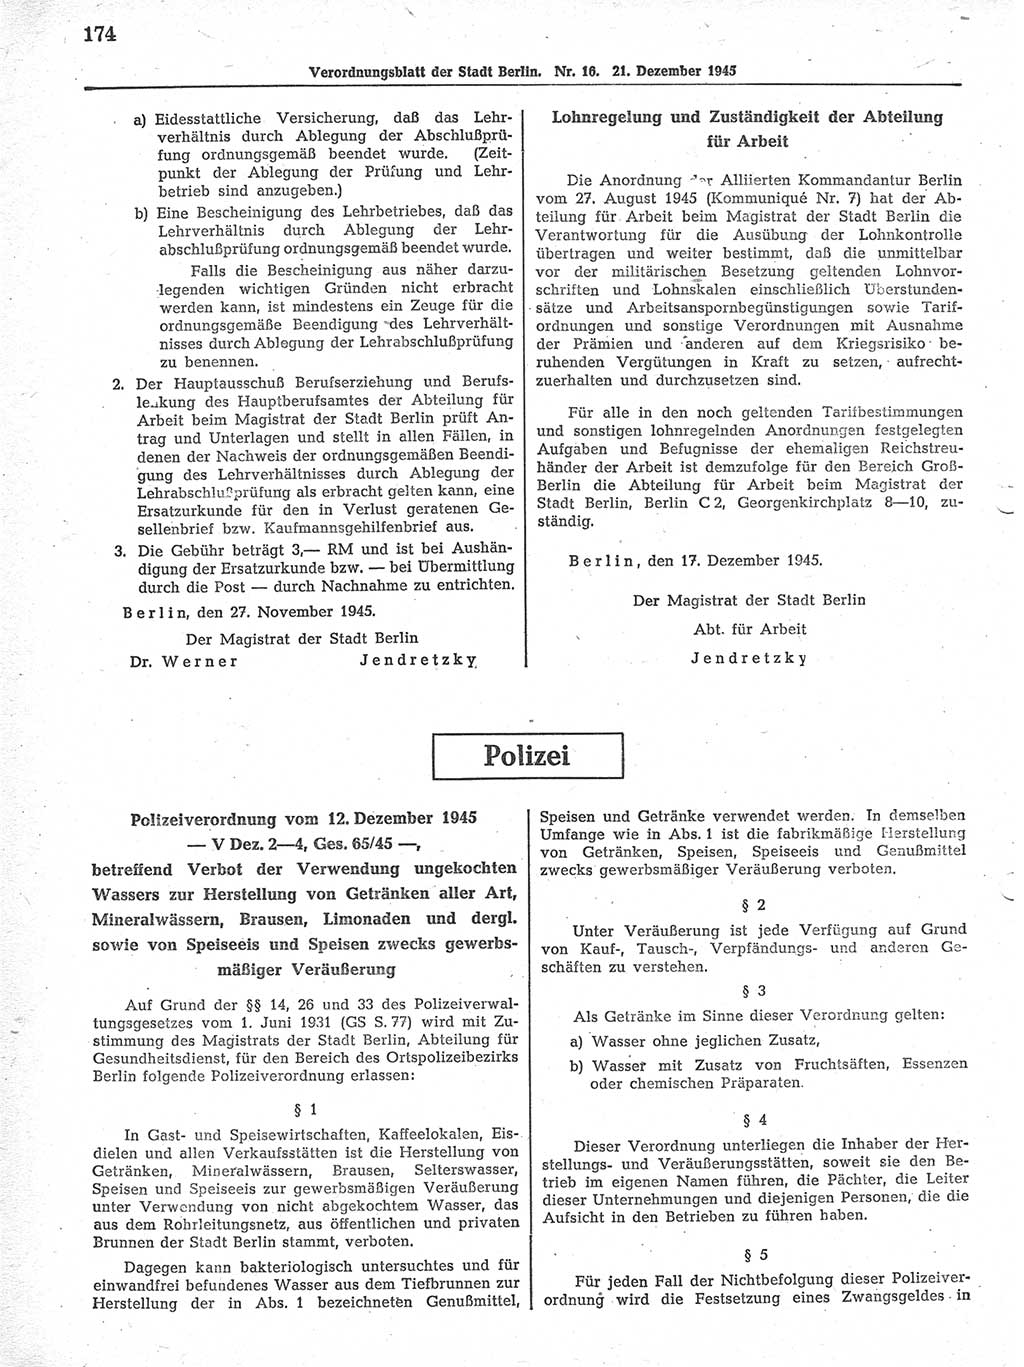 Verordnungsblatt (VOBl.) der Stadt Berlin 1945, Seite 174 (VOBl. Bln. 1945, S. 174)